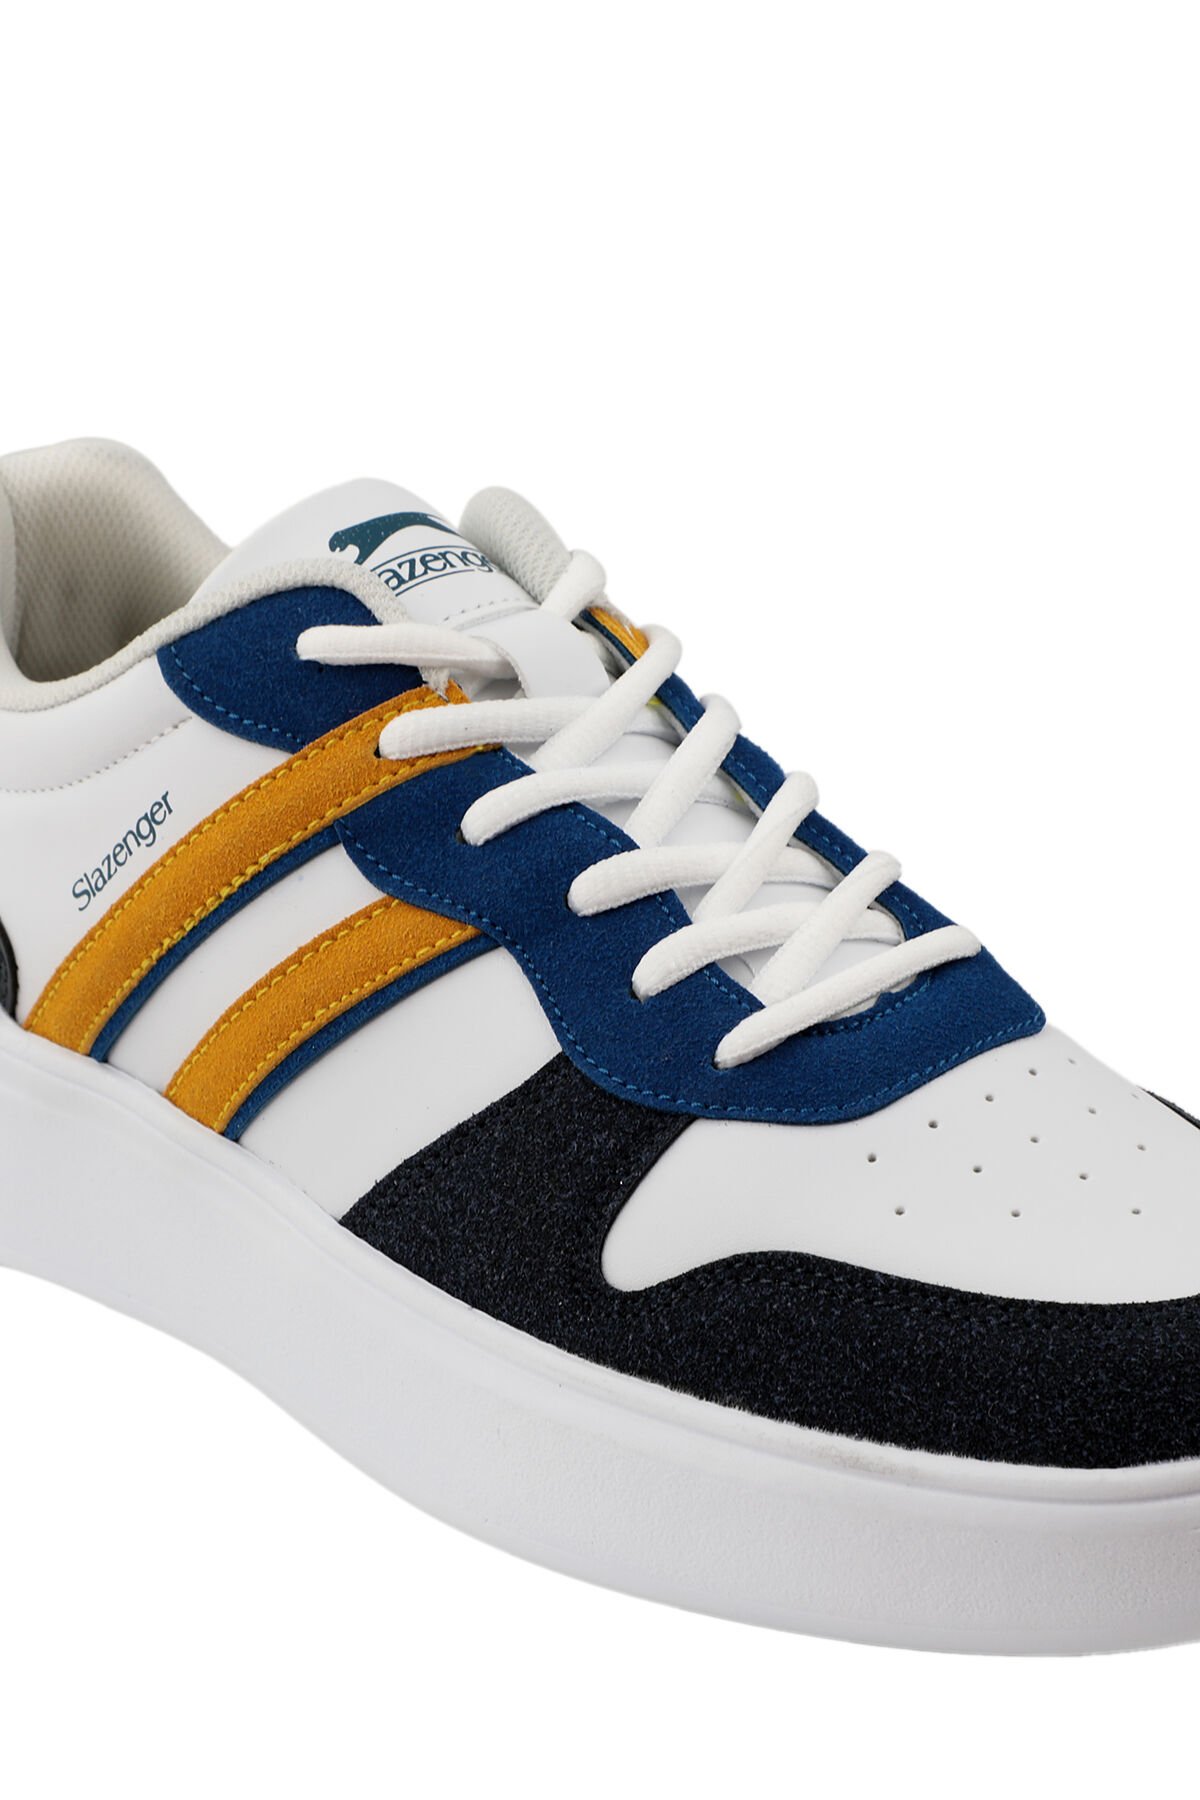 Slazenger BERRY Sneaker Erkek Ayakkabı Beyaz / Saks Mavi - Thumbnail